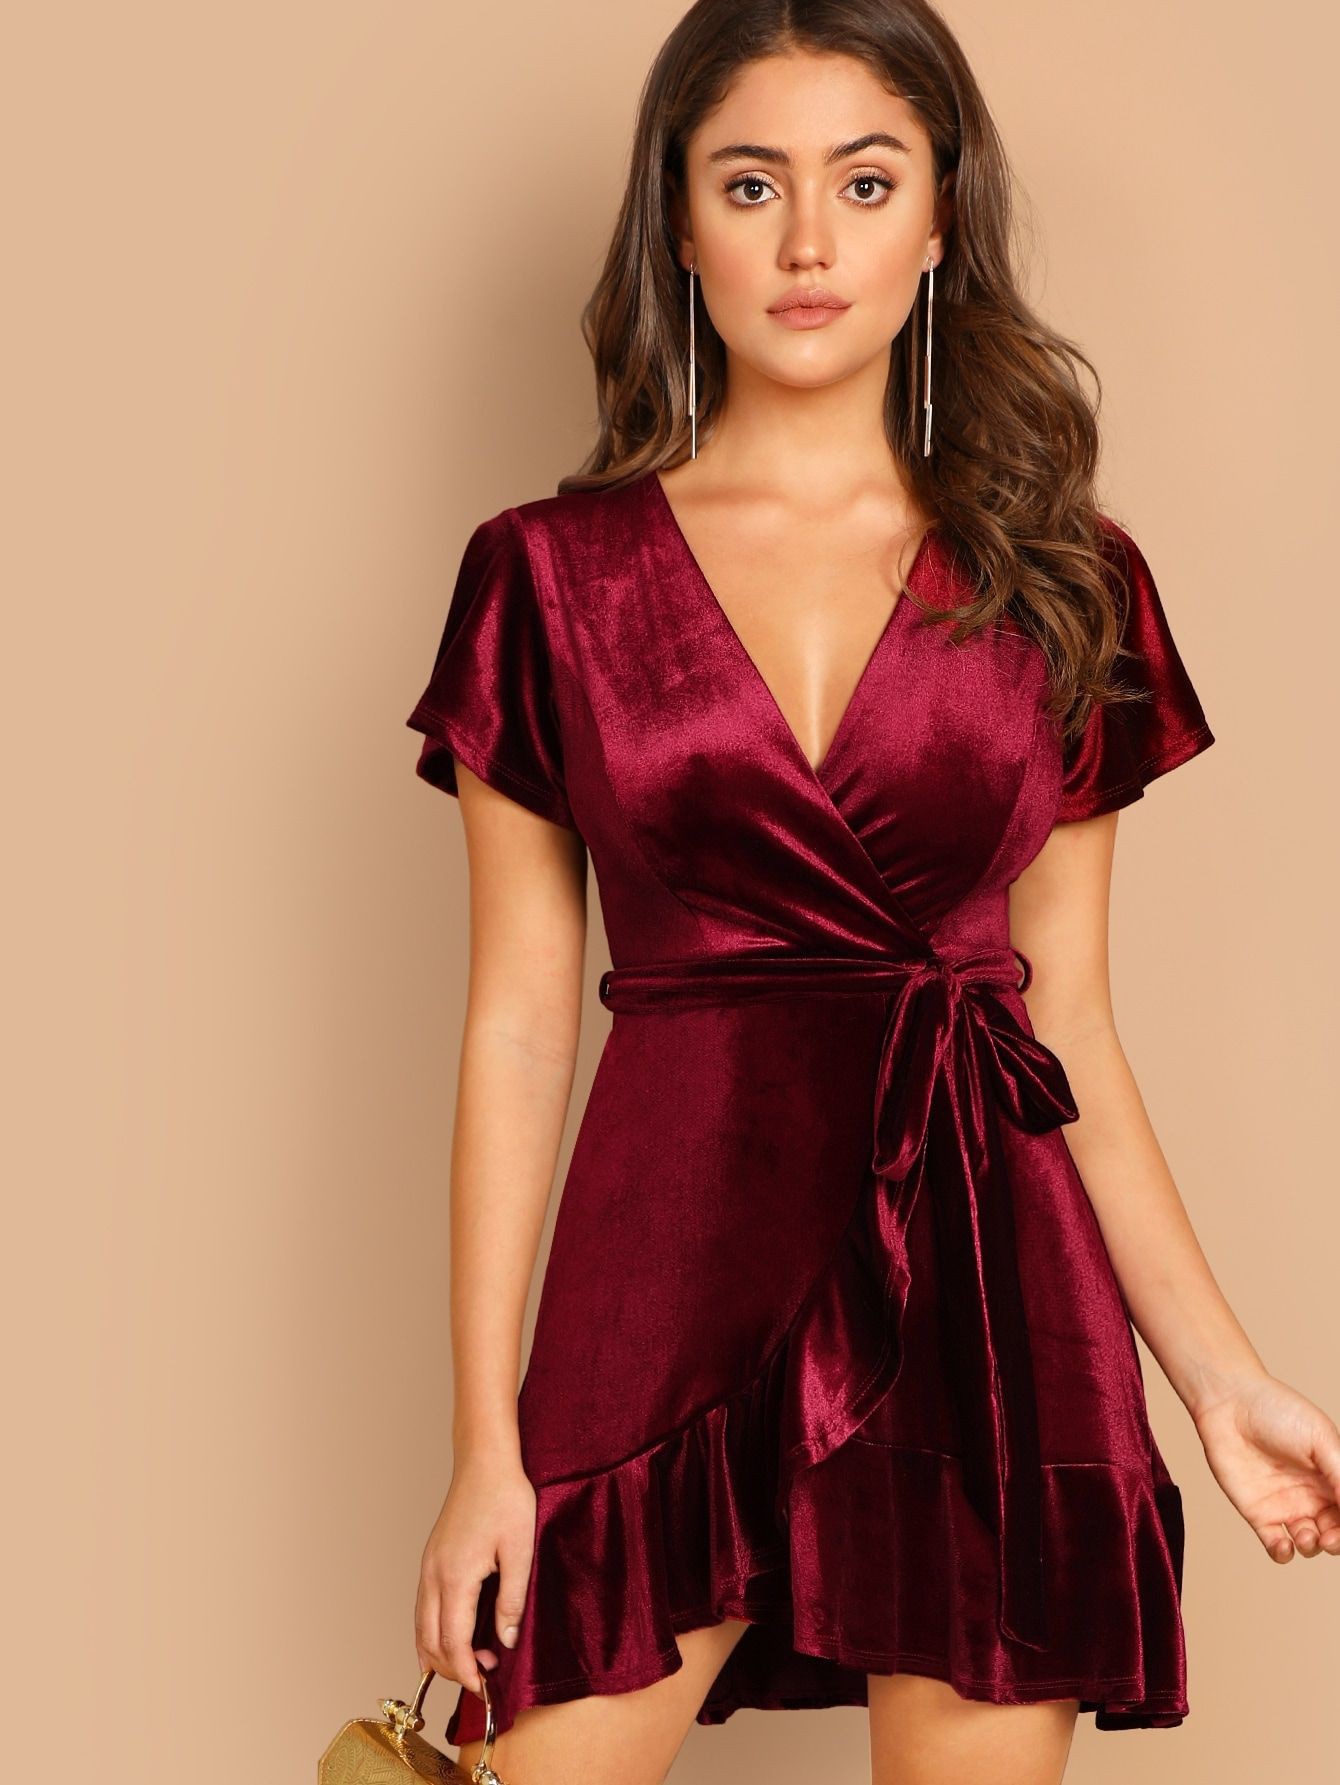 Red velvet dress short, Cocktail dress | Velvet Outfit Ideas for Women